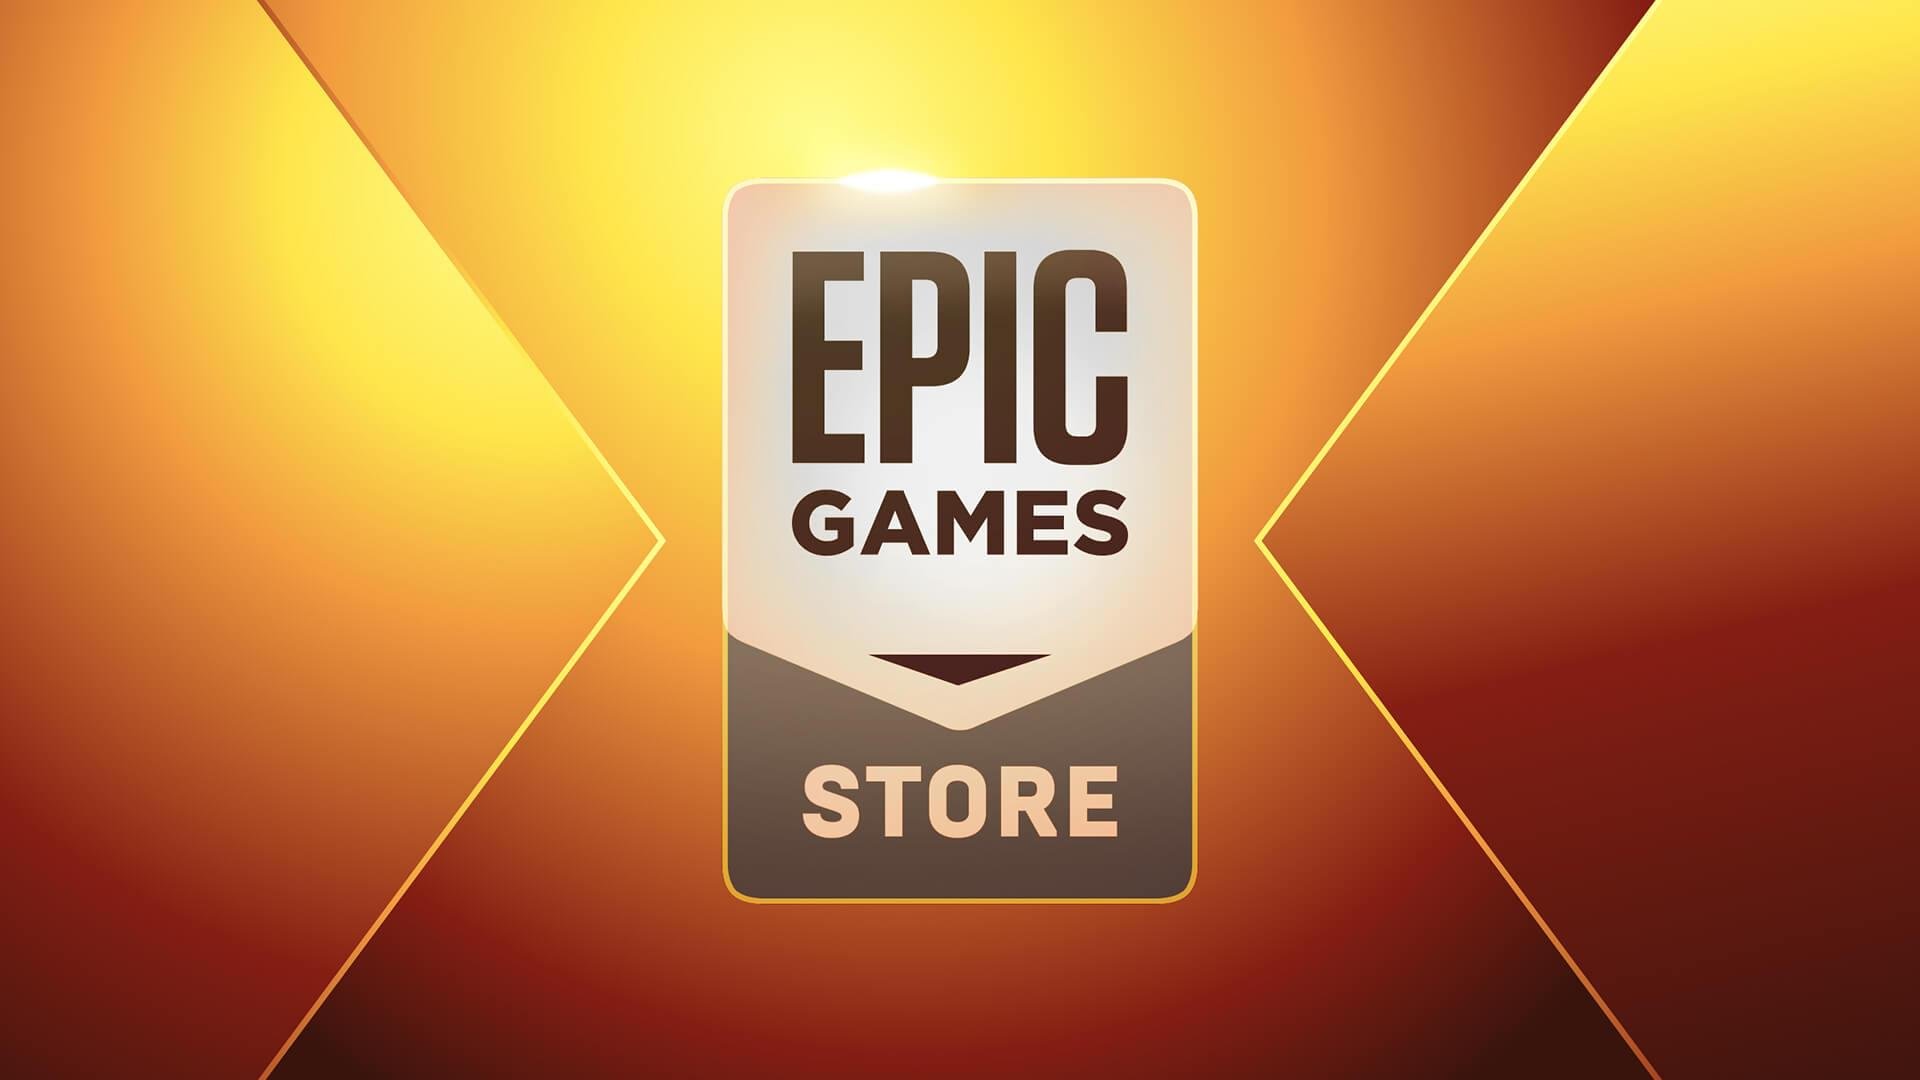 Epic Games Store libera dois jogos grátis nesta quinta (23)